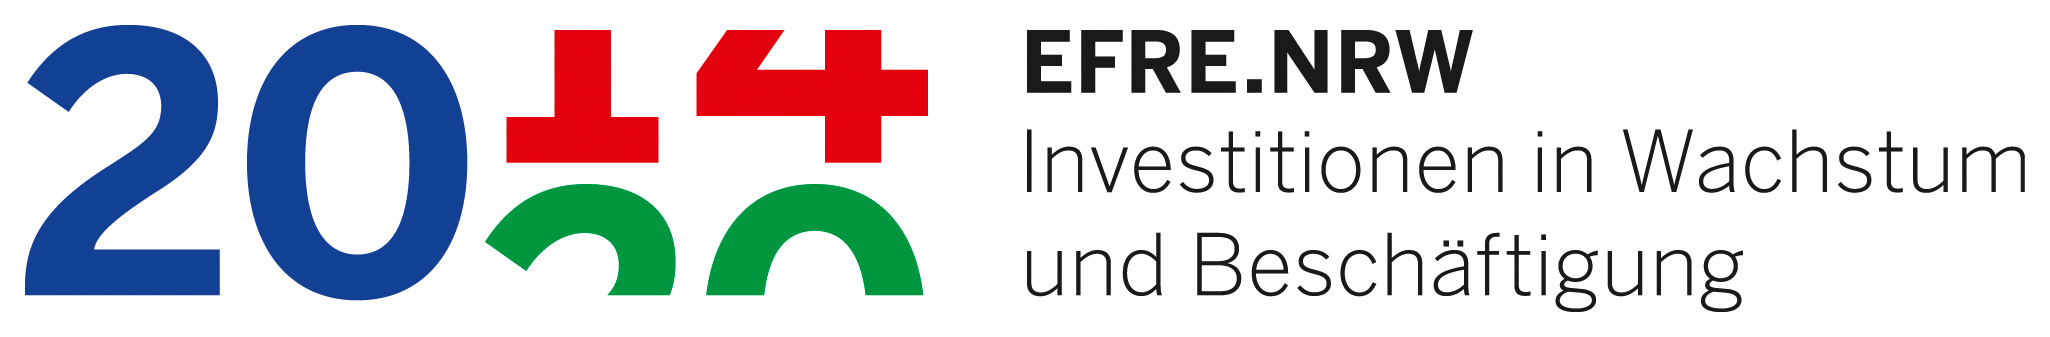 EFRE.NRW-Emblem